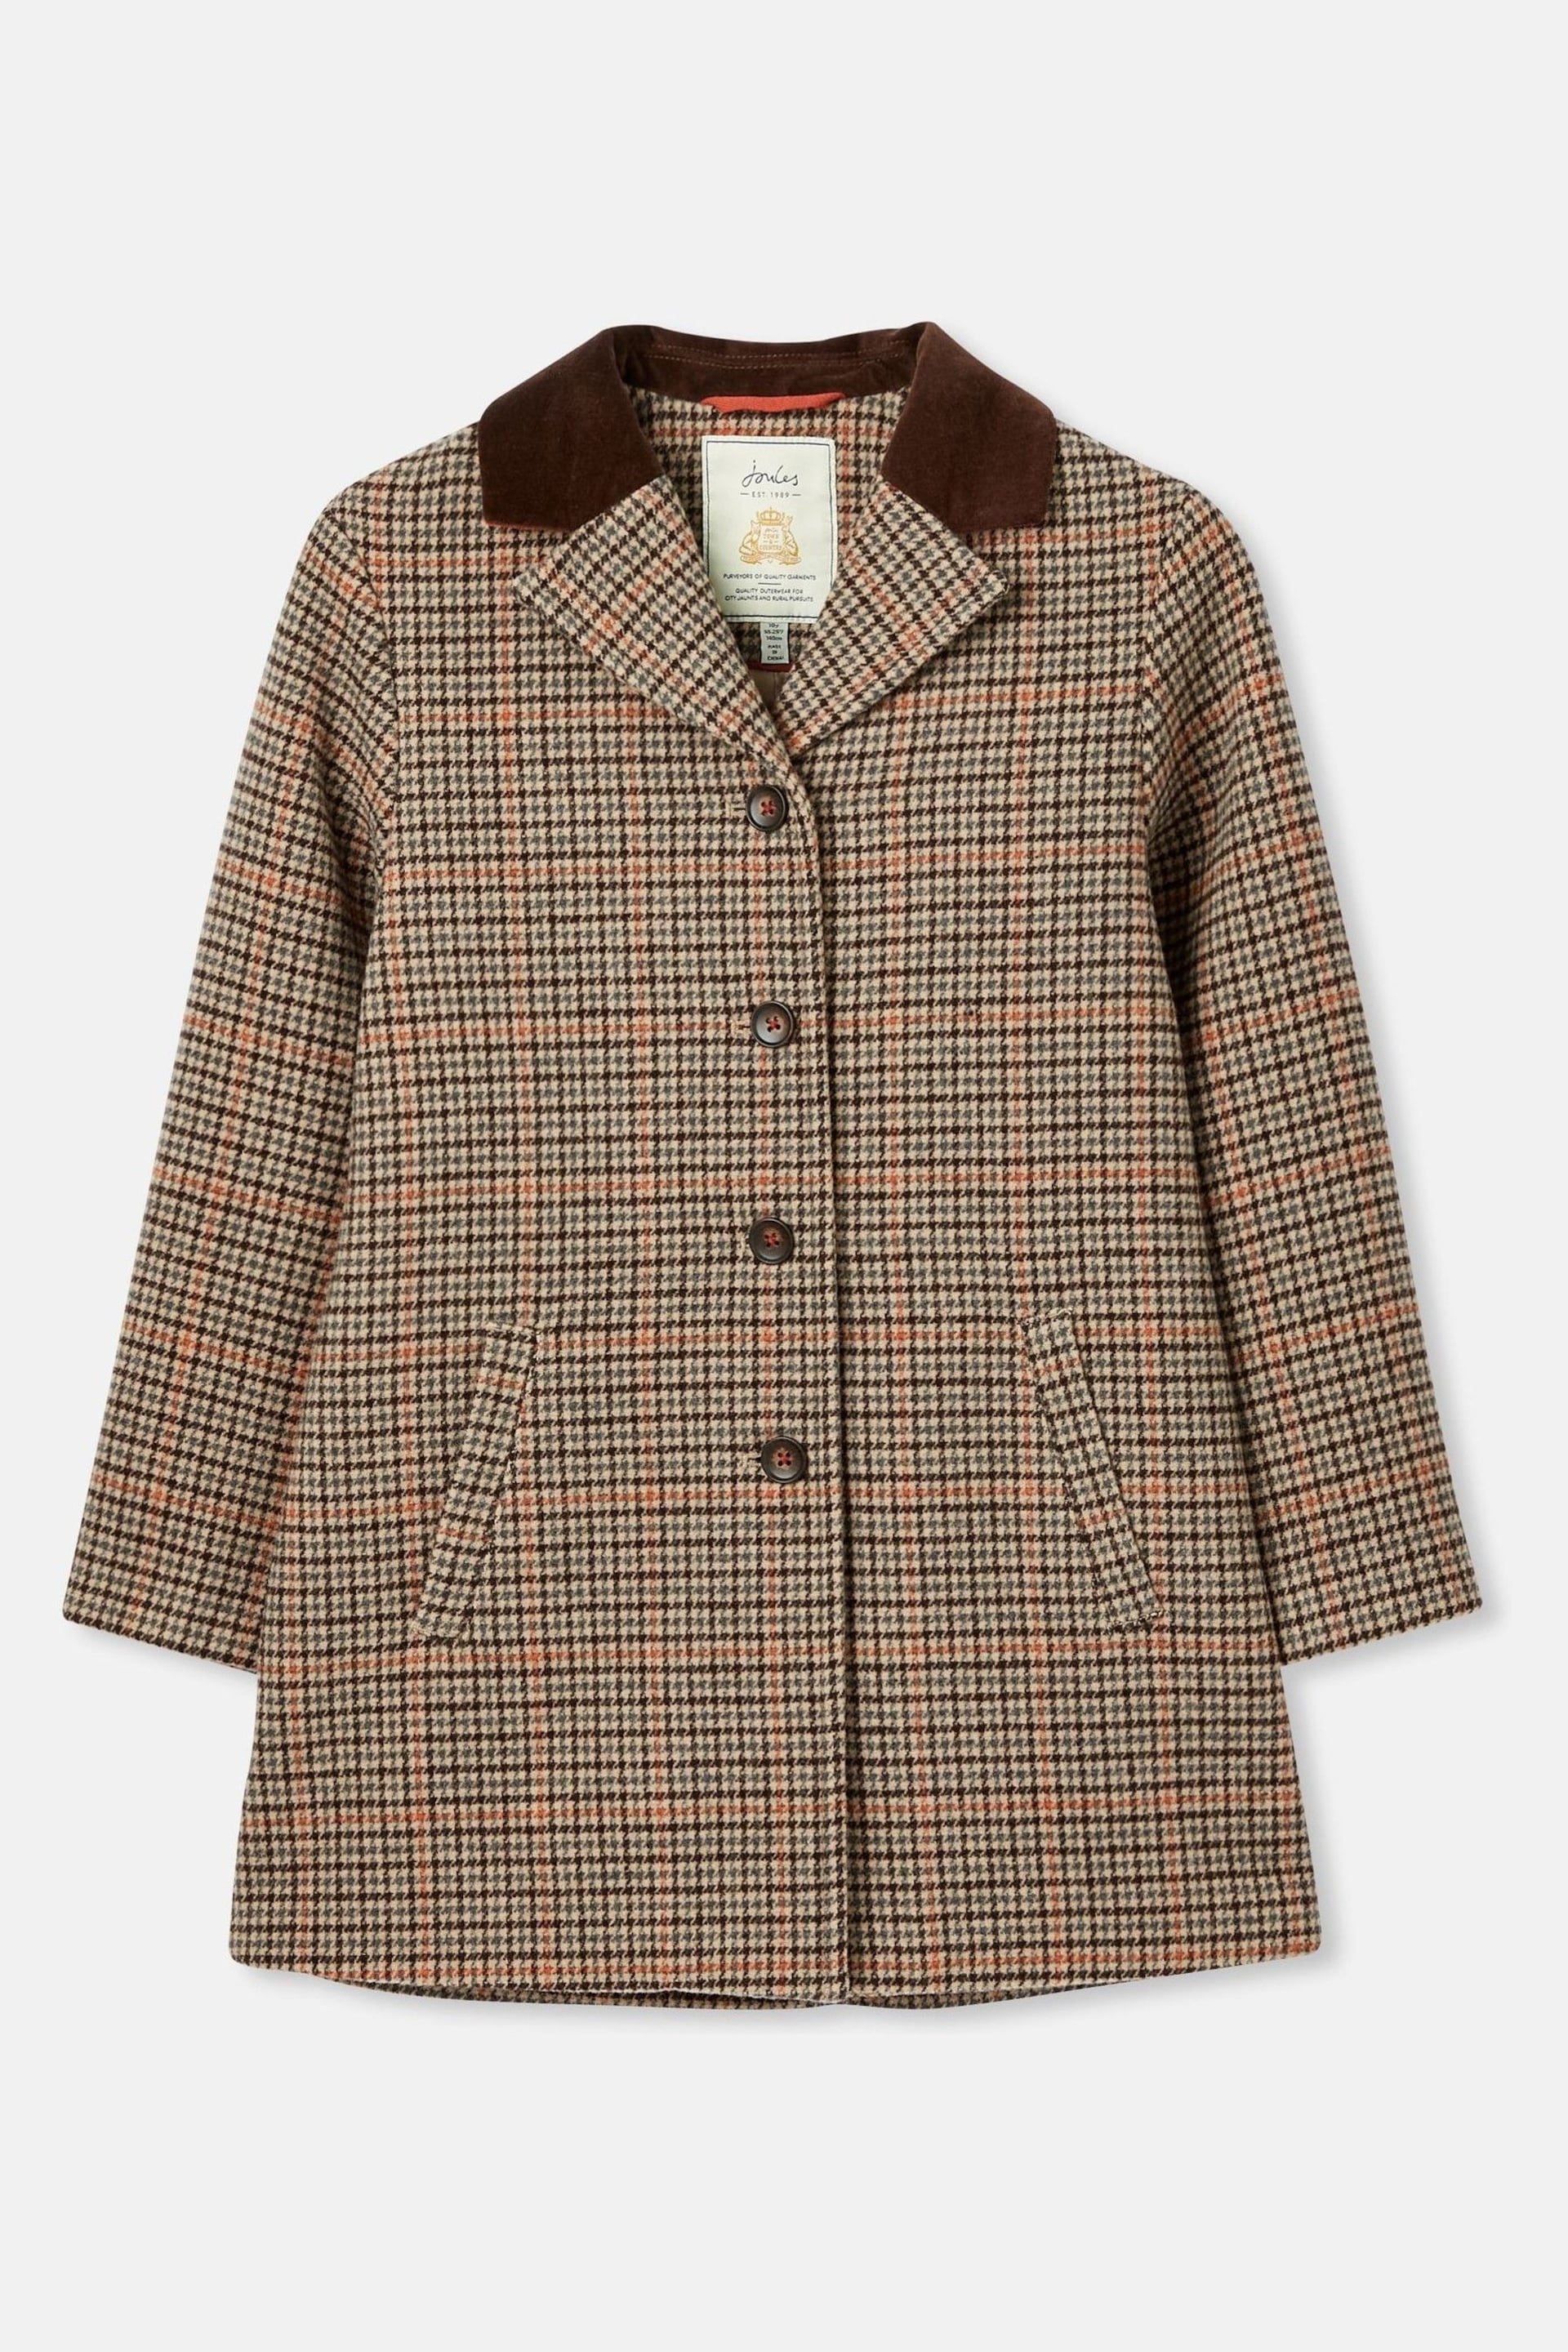 Joules Harrow Brown Wool Coat - Image 2 of 7